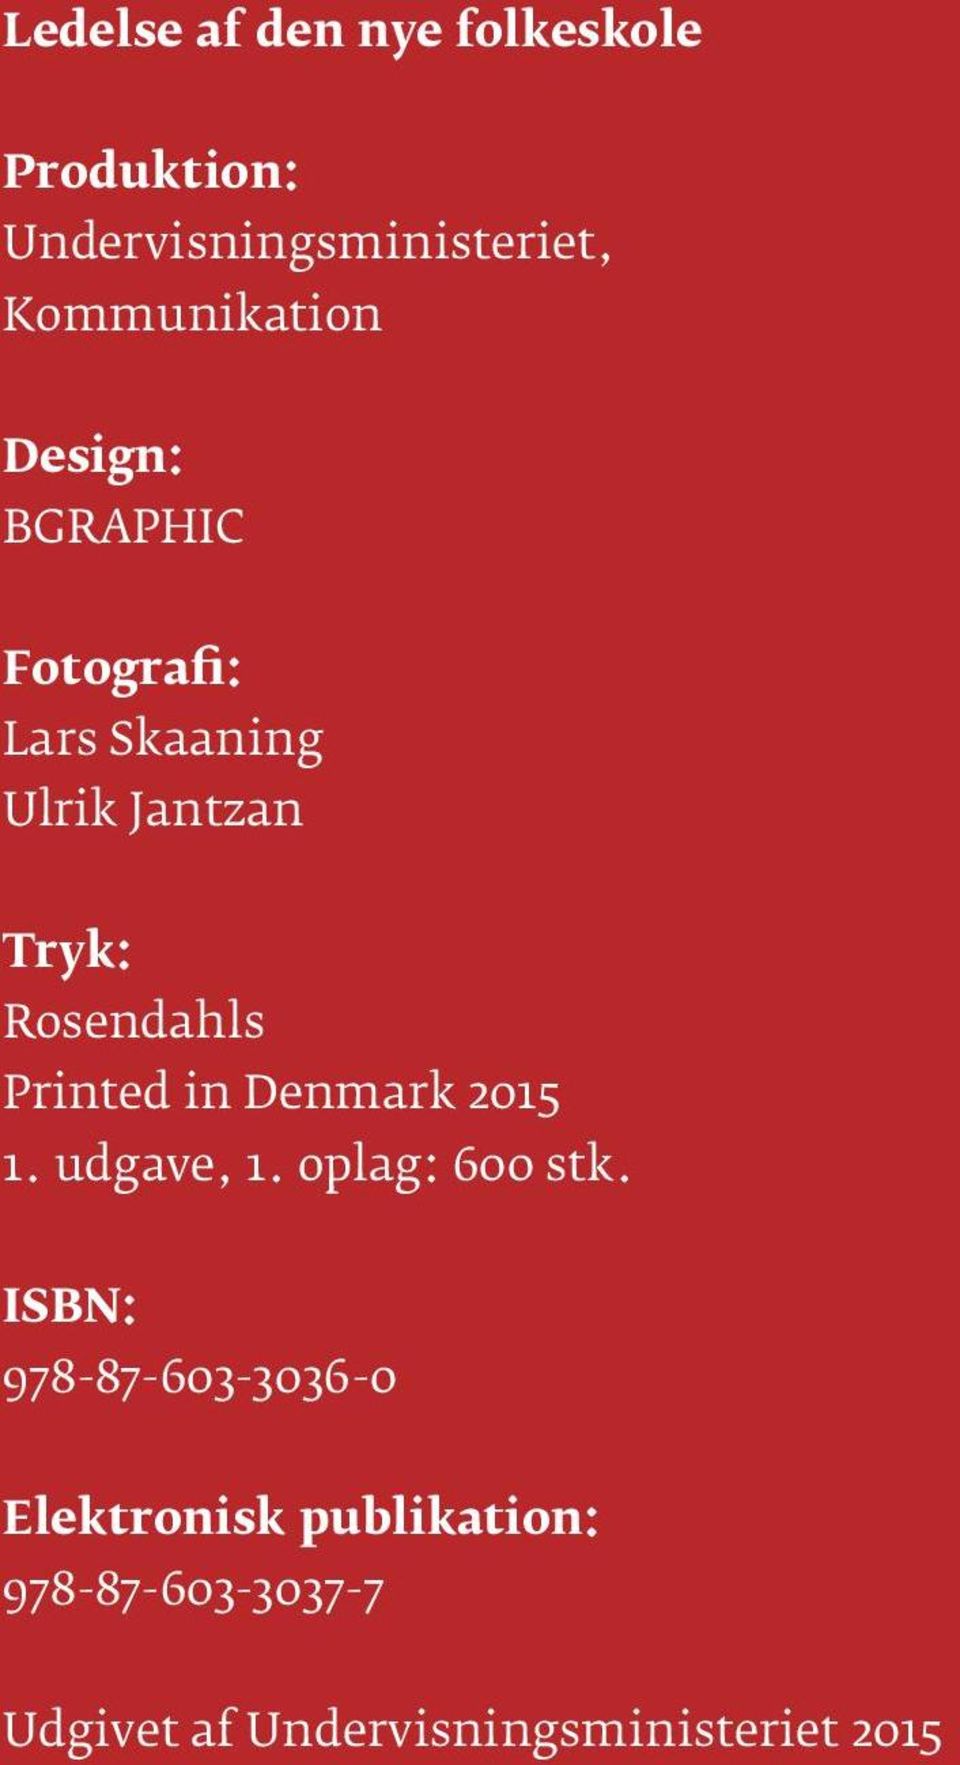 Denmark 2015 1. udgave, 1. oplag: 600 stk.